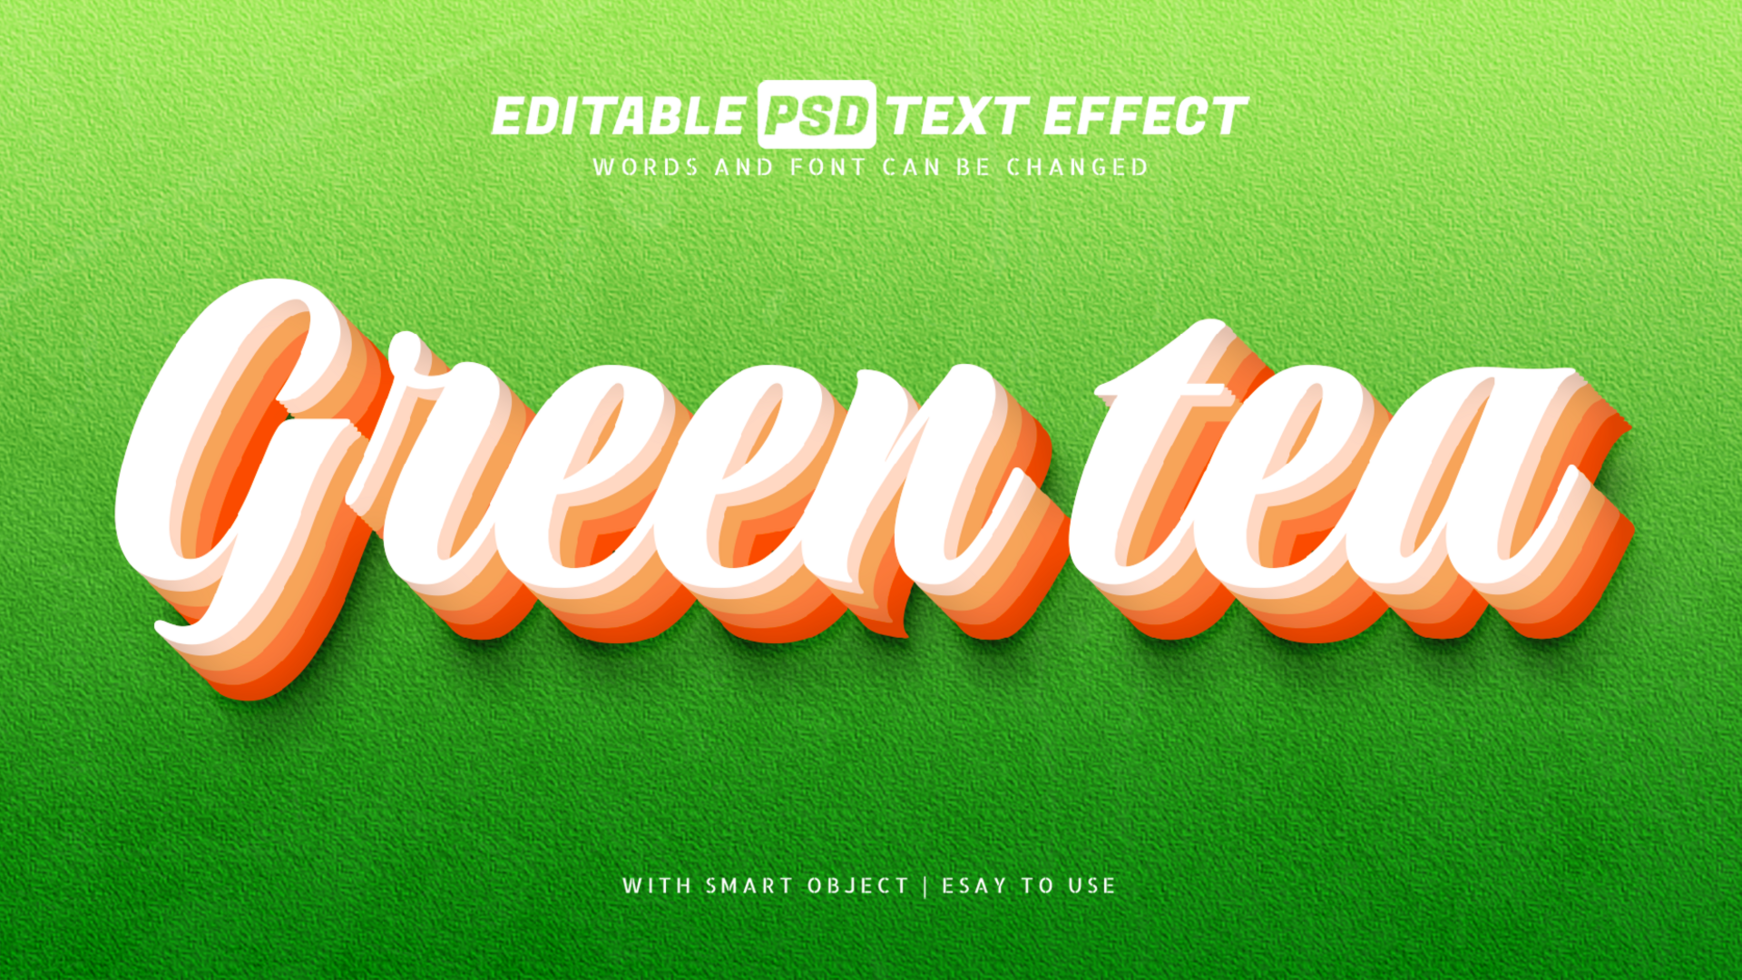 Green tea 3d style text effect psd